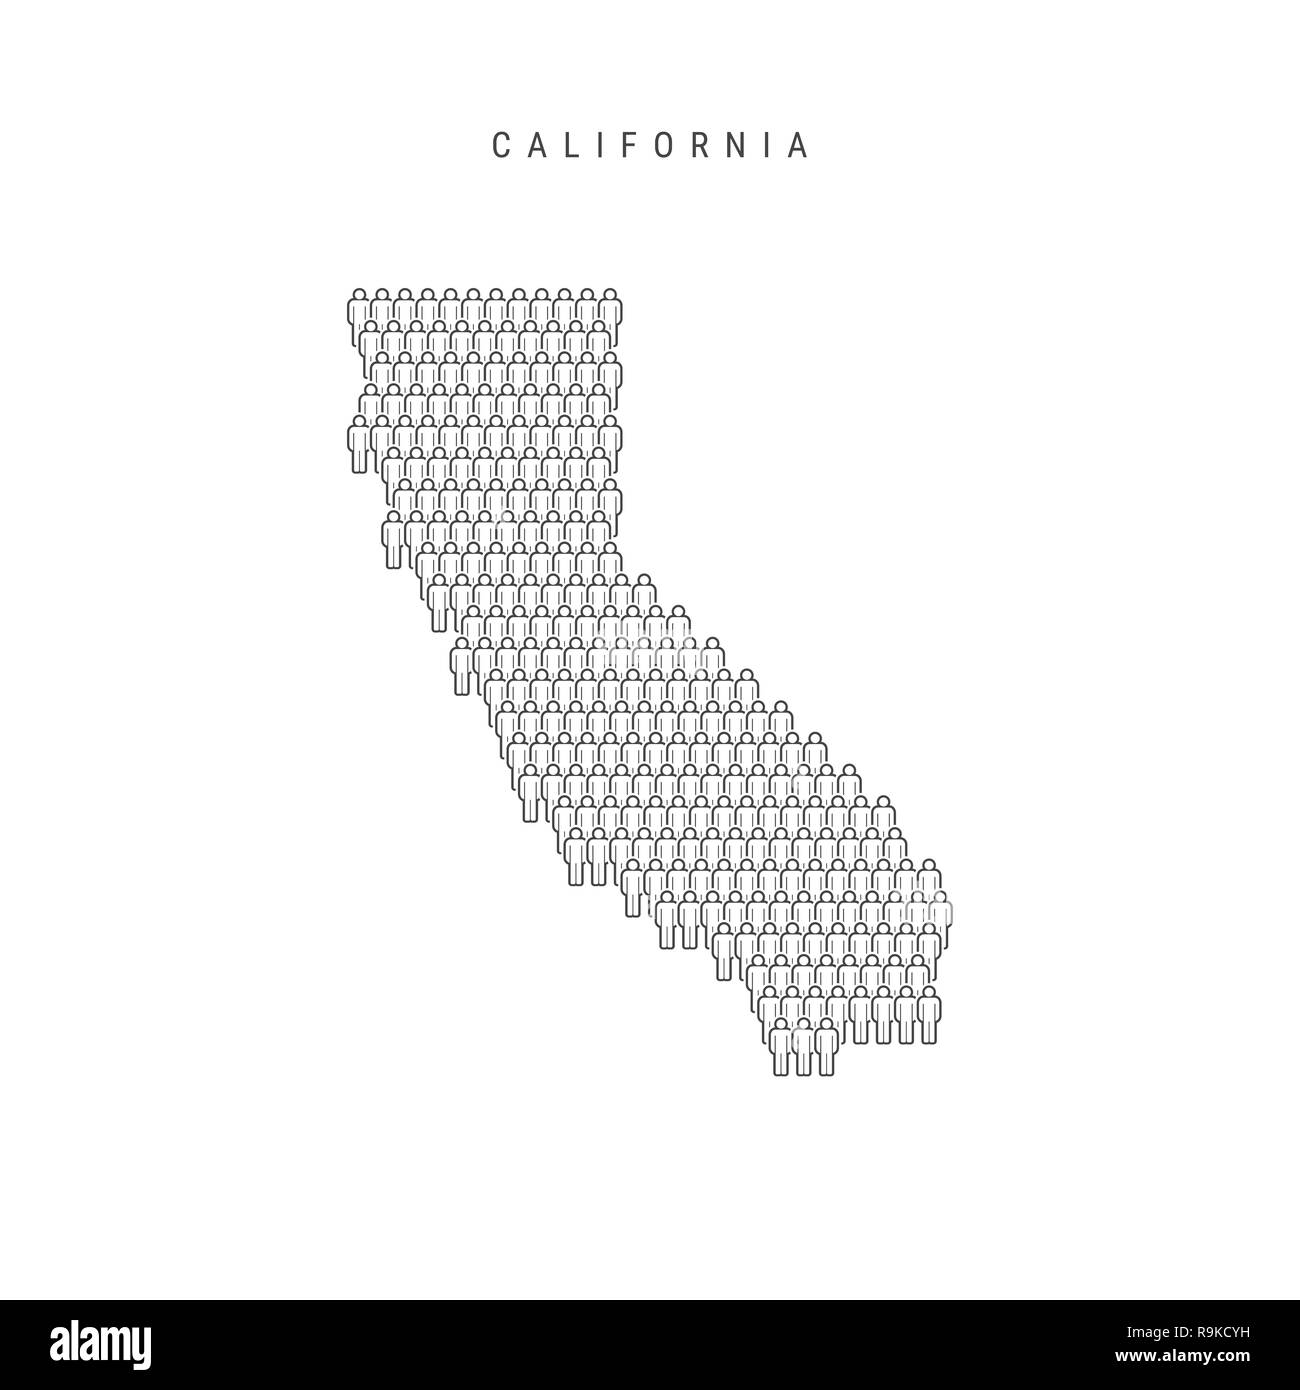 Leute Karte von Kalifornien, USA. Stilisierte Silhouette, Leute in der Form einer Karte von Kalifornien. Kalifornien Bevölkerung. Abbildung: Isolieren Stockfoto